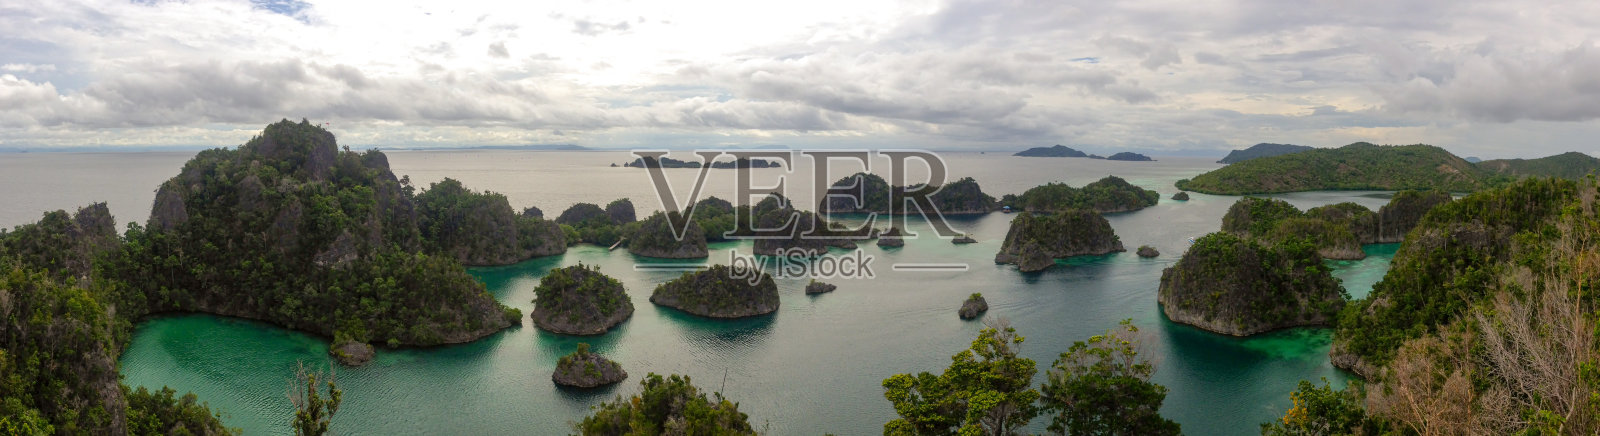 皮亚尼摩岛安帕特群岛国王的全景照片摄影图片